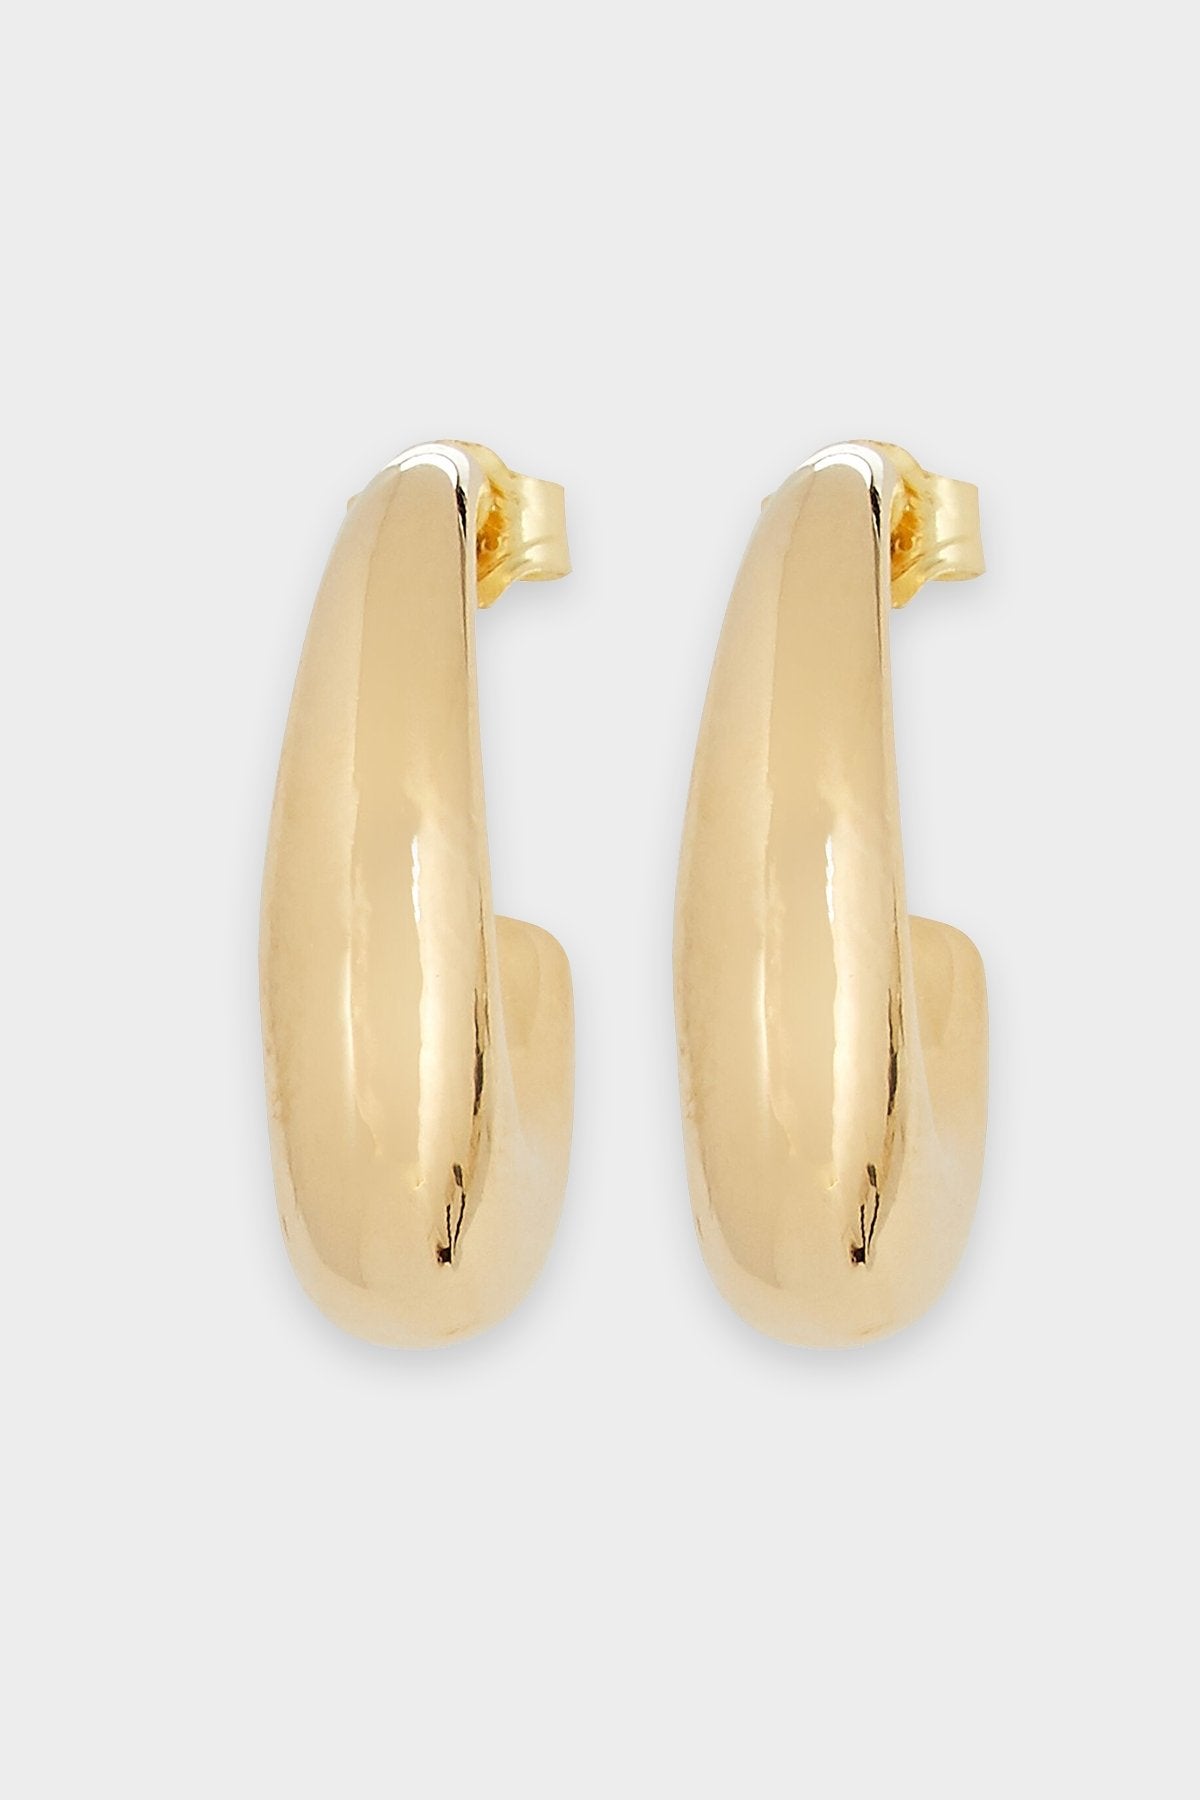 Beam Hoop Earrings in Gold - shop-olivia.com